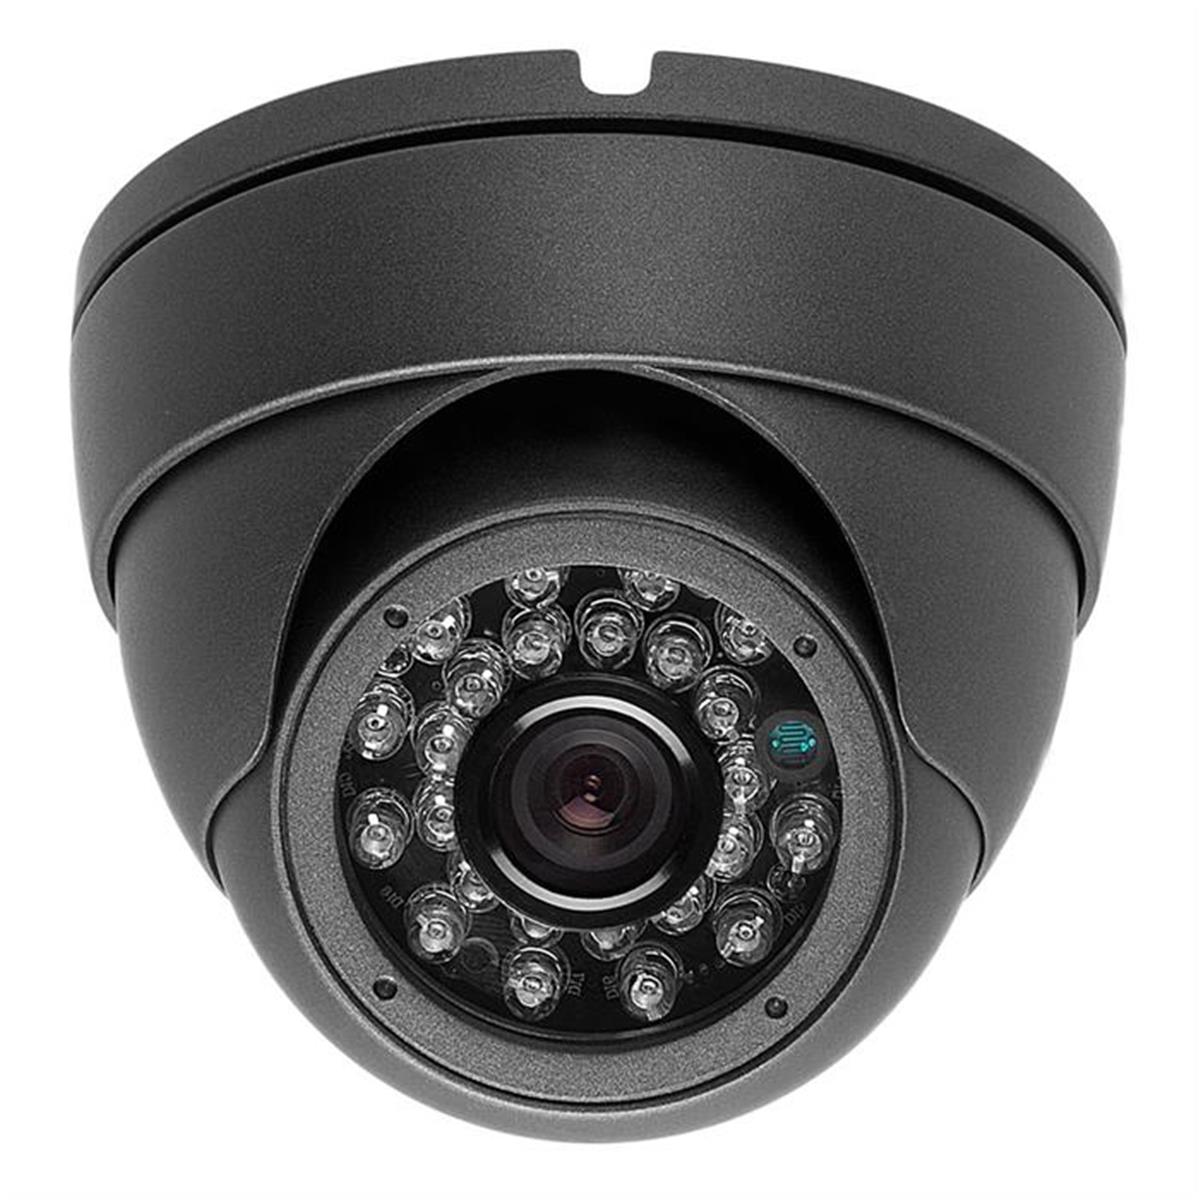 1271-n 700tvl 3.6 Mm Dark Gray 24ir Cctv Surveillance Indoor & Outdoor Security Dome Camera